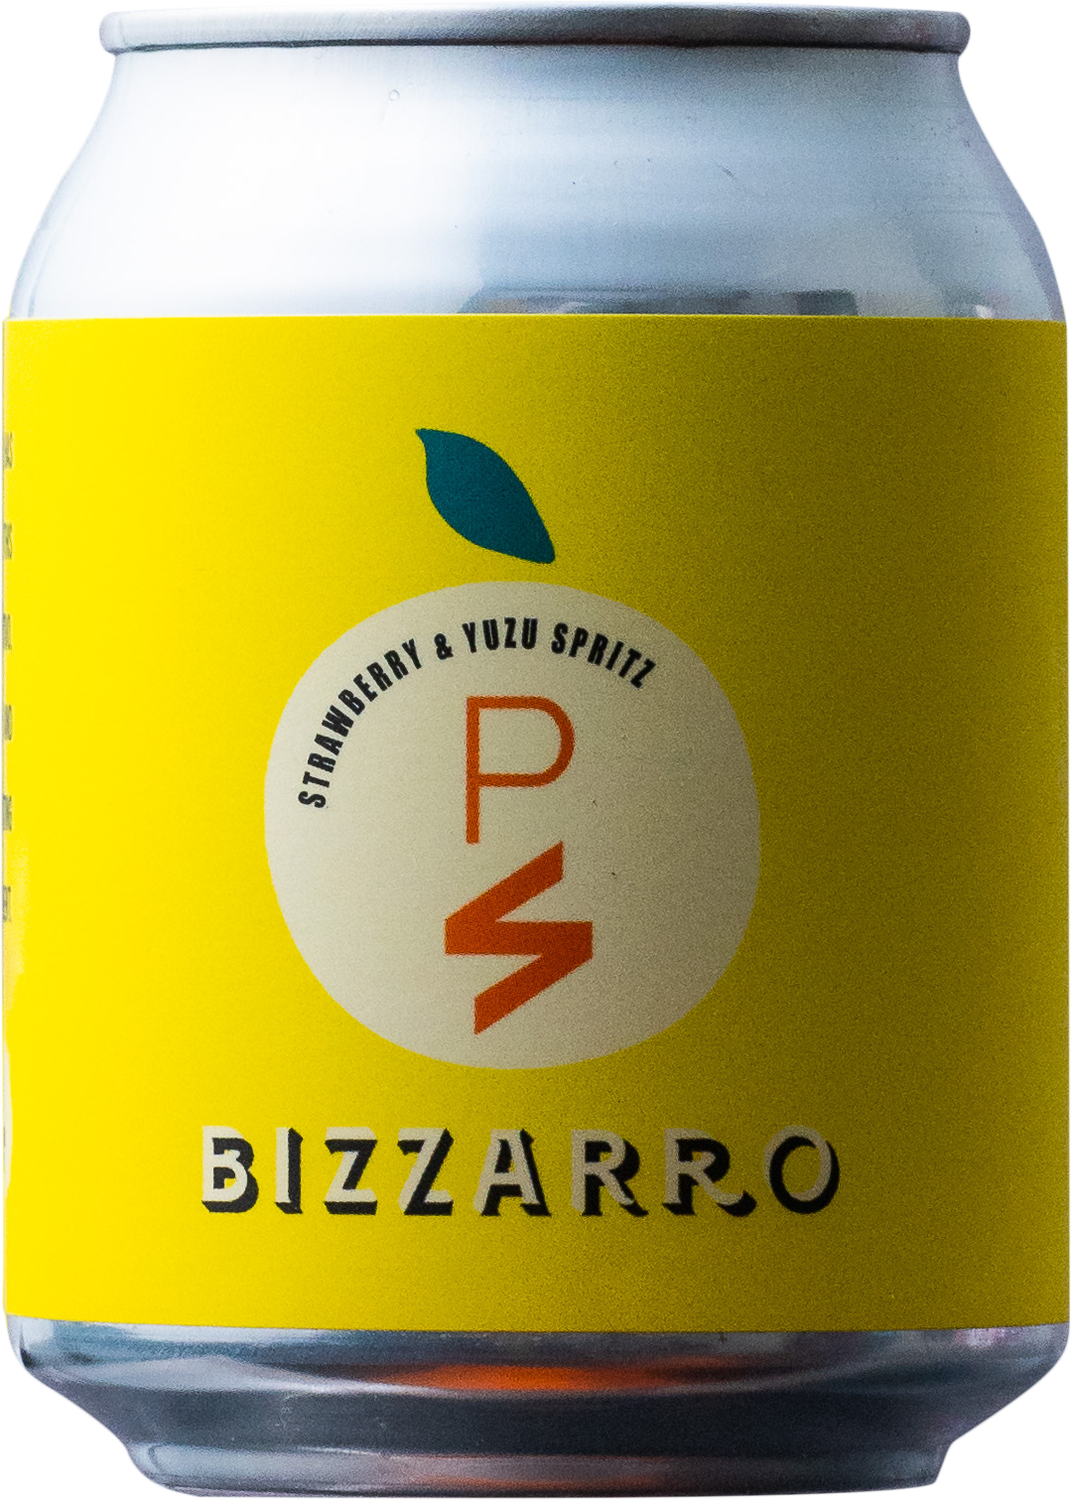 Bizzarro - PS40 Yuzu Spritz 4PACK